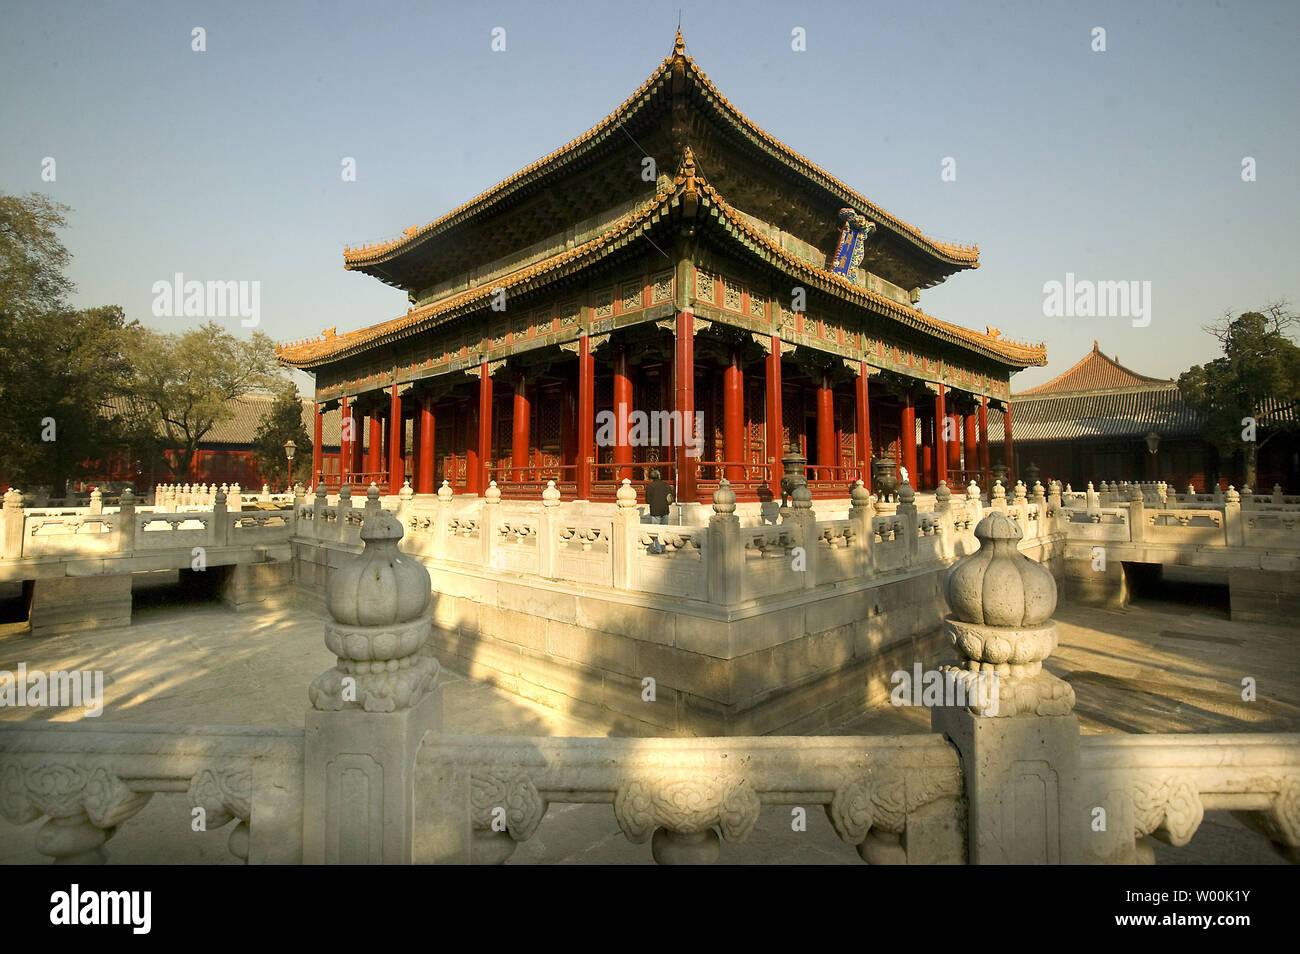 Les touristes chinois visiter le Temple de Confucius dans le centre de Pékin, le 23 novembre 2008. Le temple a été construit en 1302 et est le deuxième plus grand temple construit pour Confucius. Confucius a été l'un des plus grands philosophes dans l'ancienne Chine, initialement influencé par la philosophie de Lao Tseu, qui a conseillé une société civile stable fondée sur l application et le respect. Les enseignements de Confucius a joué un rôle clé dans l'époque impériale et ont encore un rôle à jouer dans la culture chinoise d'aujourd'hui. (UPI Photo/Stephen Shaver) Banque D'Images